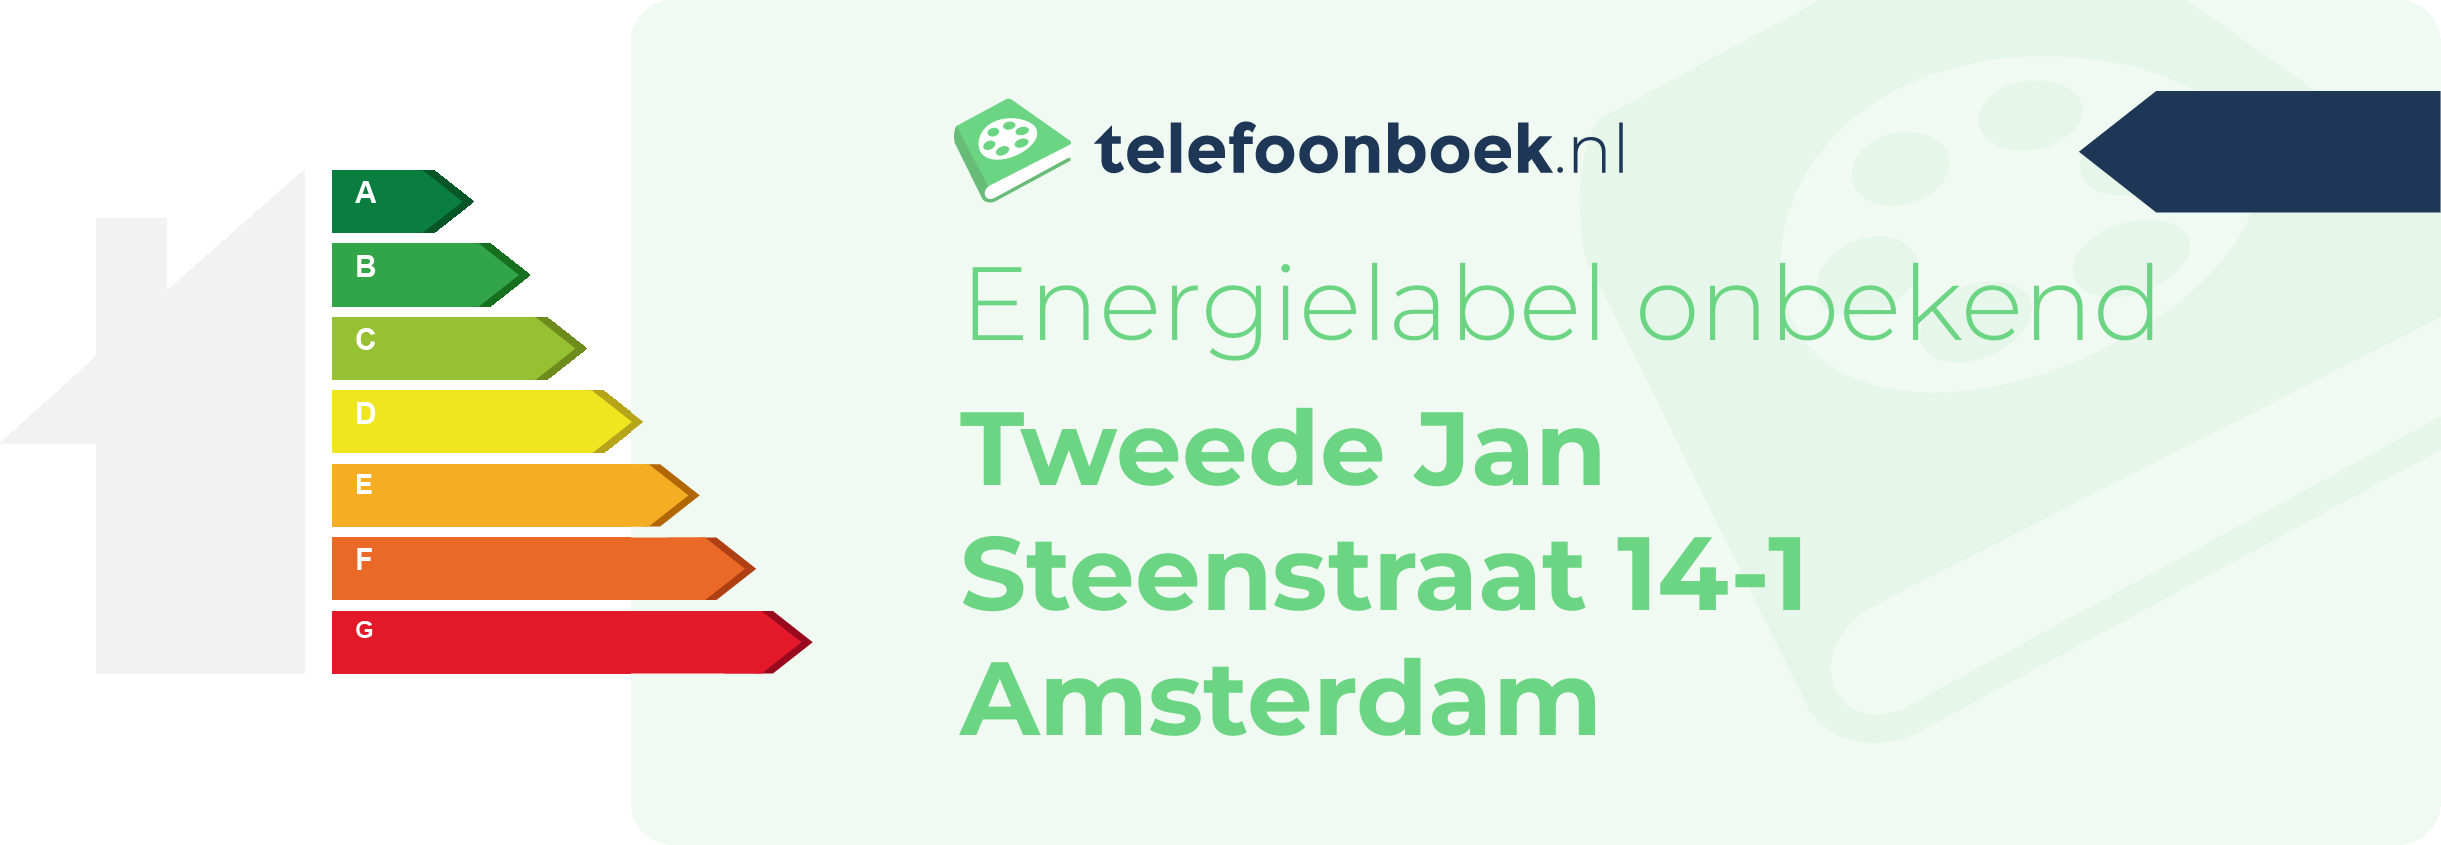 Energielabel Tweede Jan Steenstraat 14-1 Amsterdam